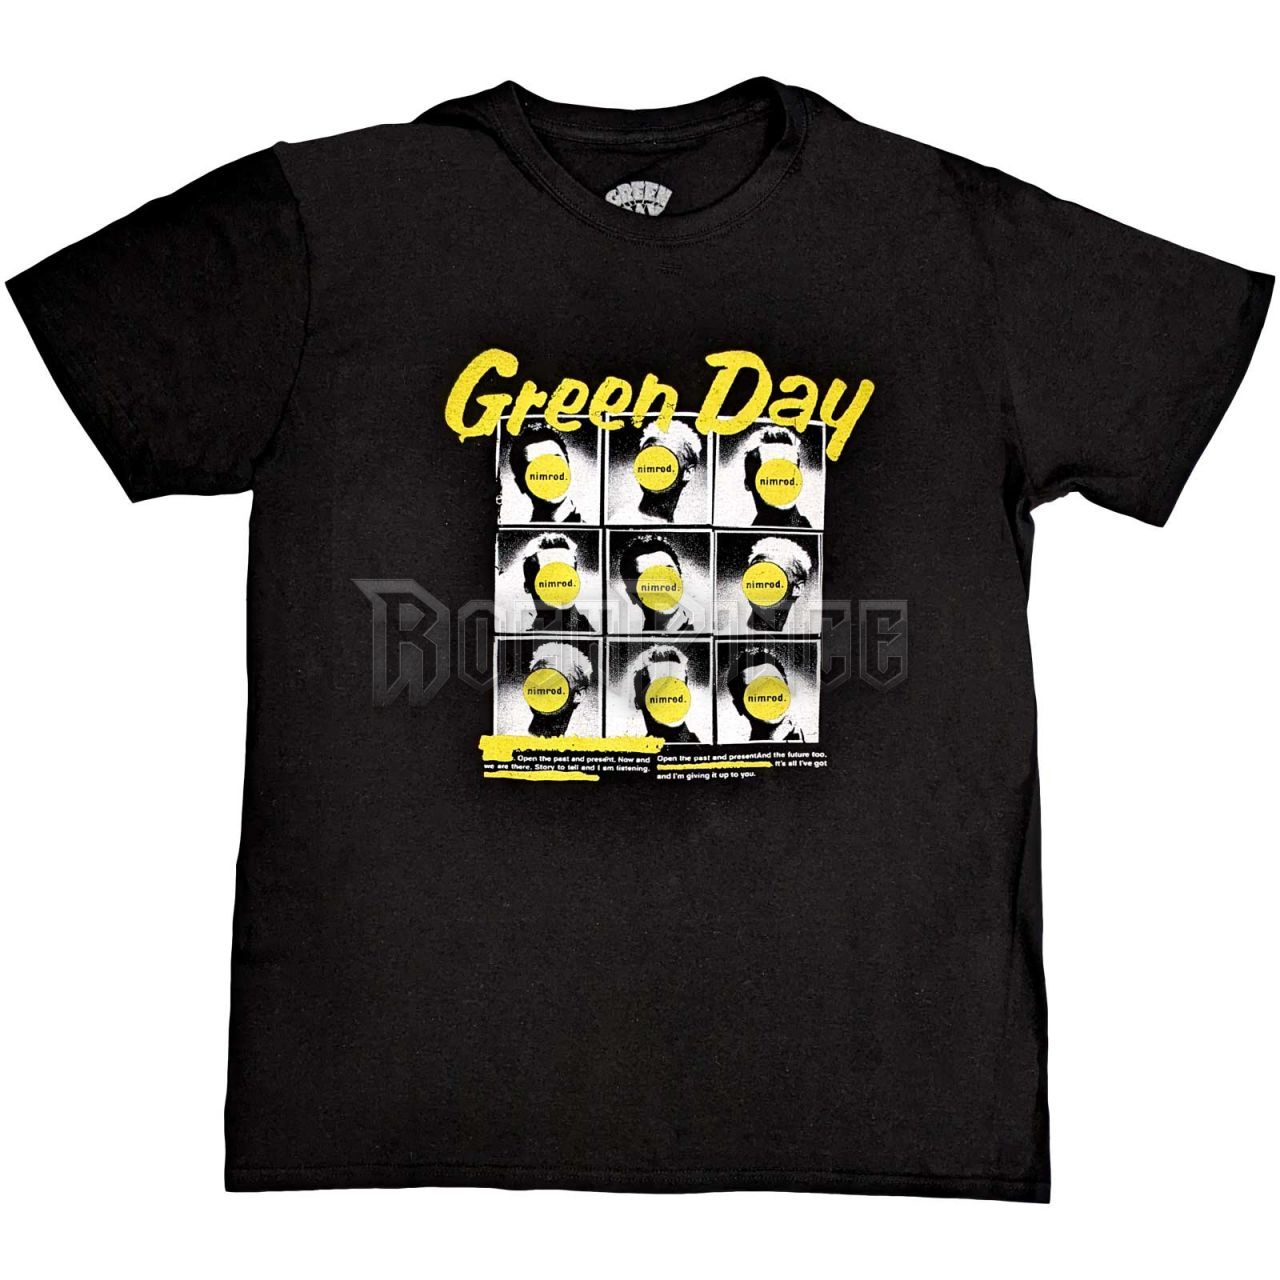 Green Day - Nimrod - unisex póló - GDTS51MB / PHD13262